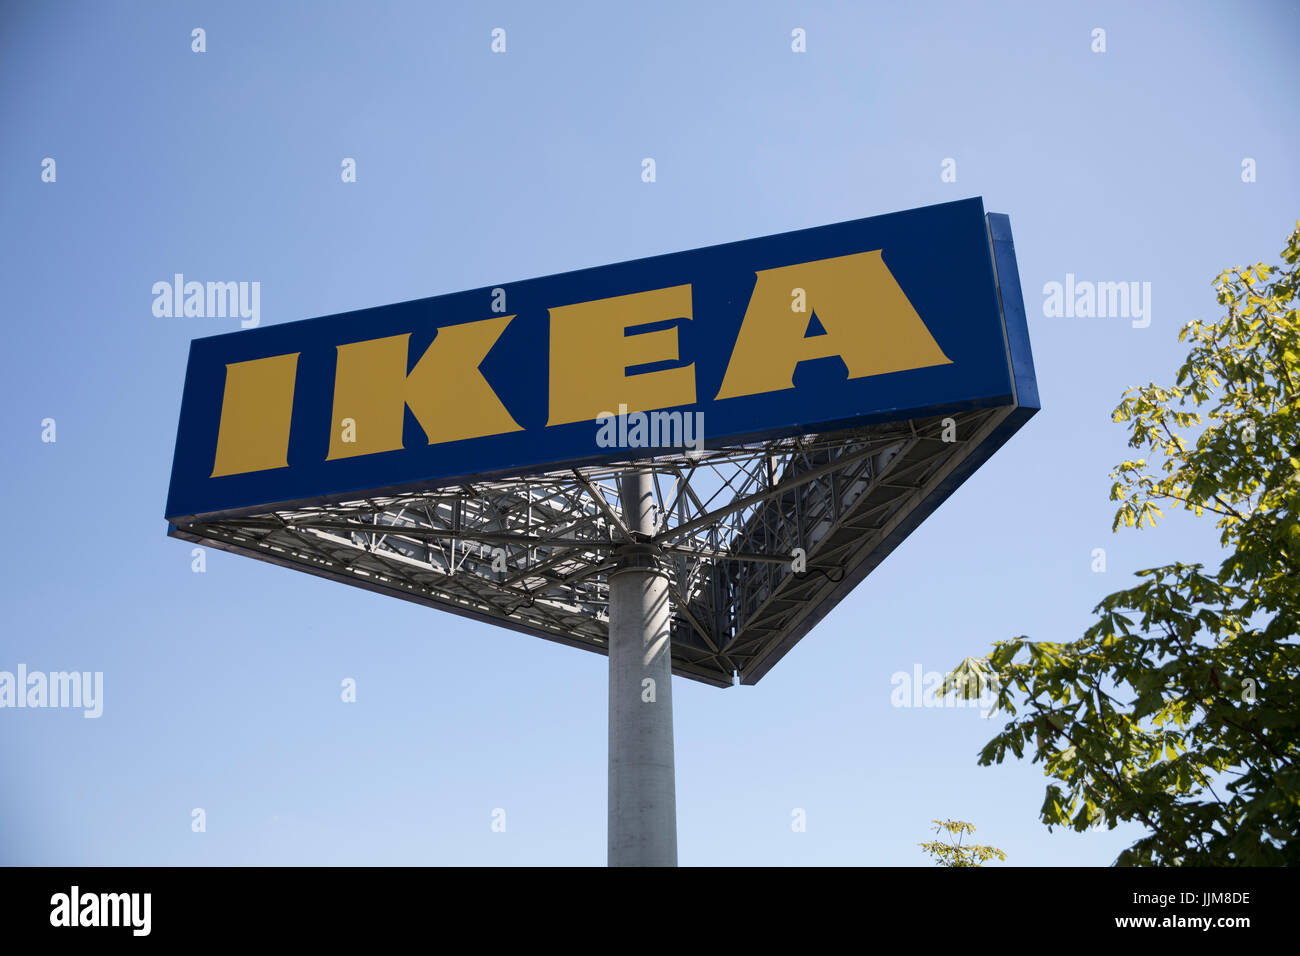 Ikea home furnishings retail store - logo Stock Photo